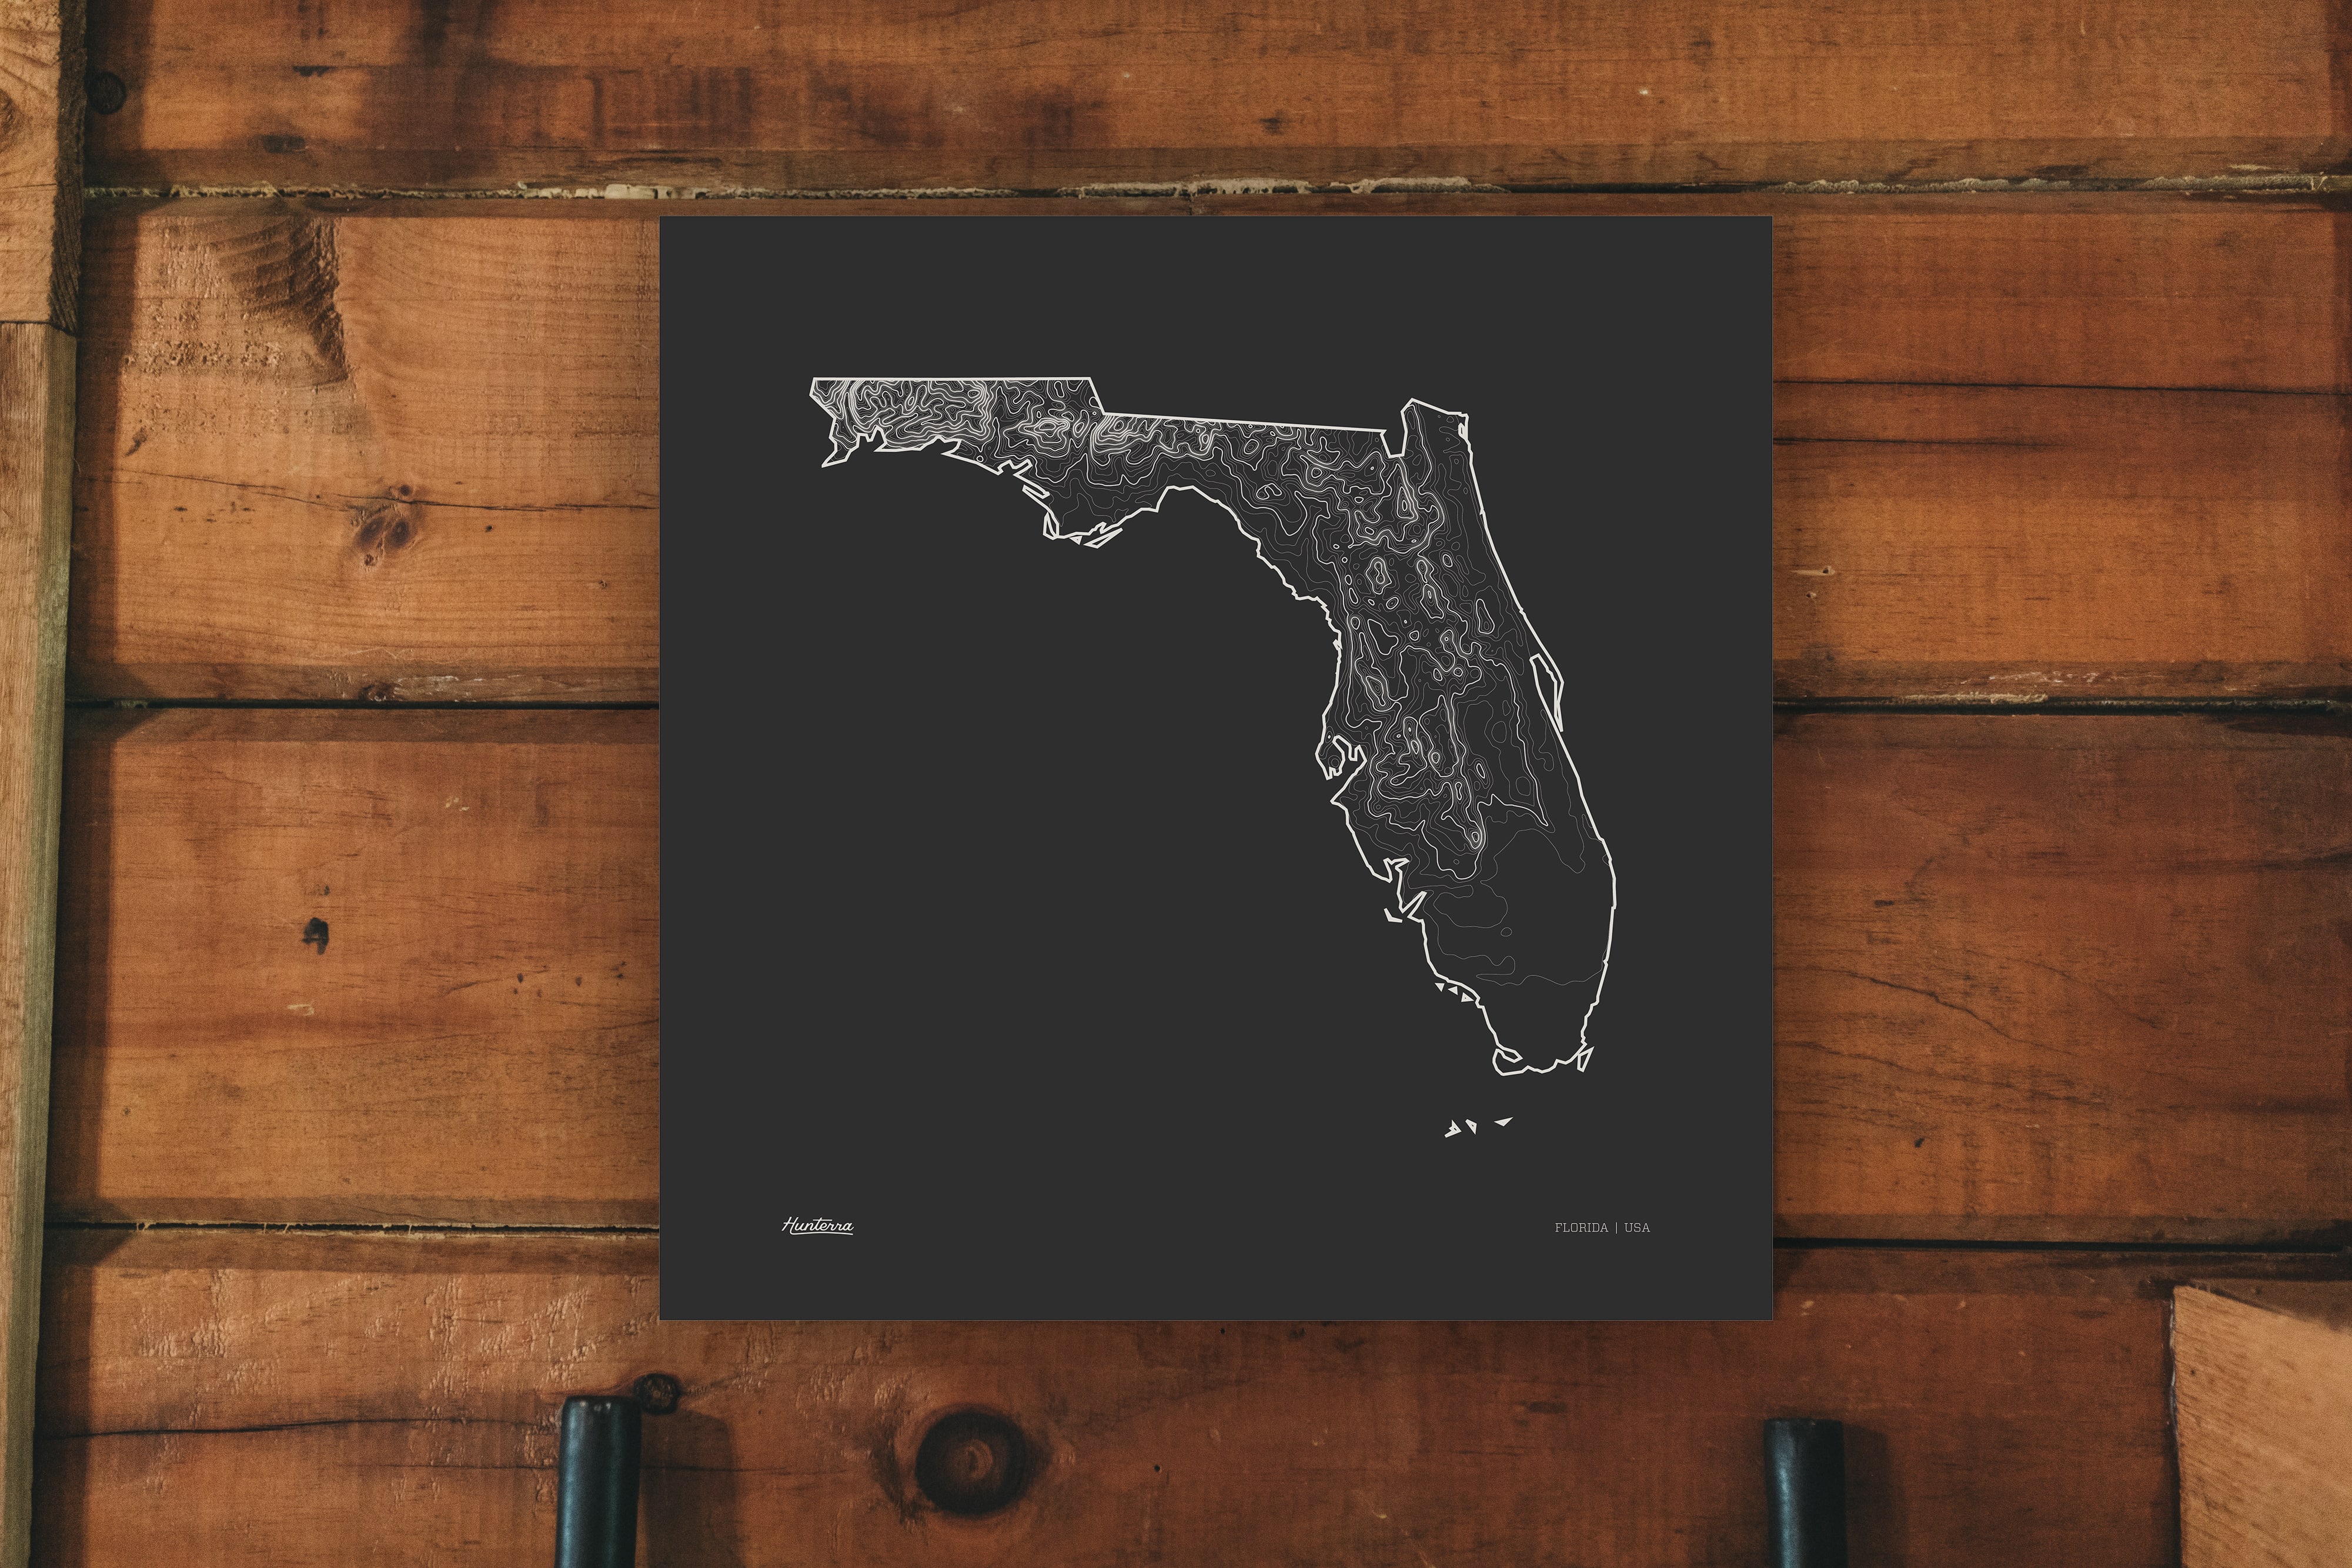 Florida Topo Map